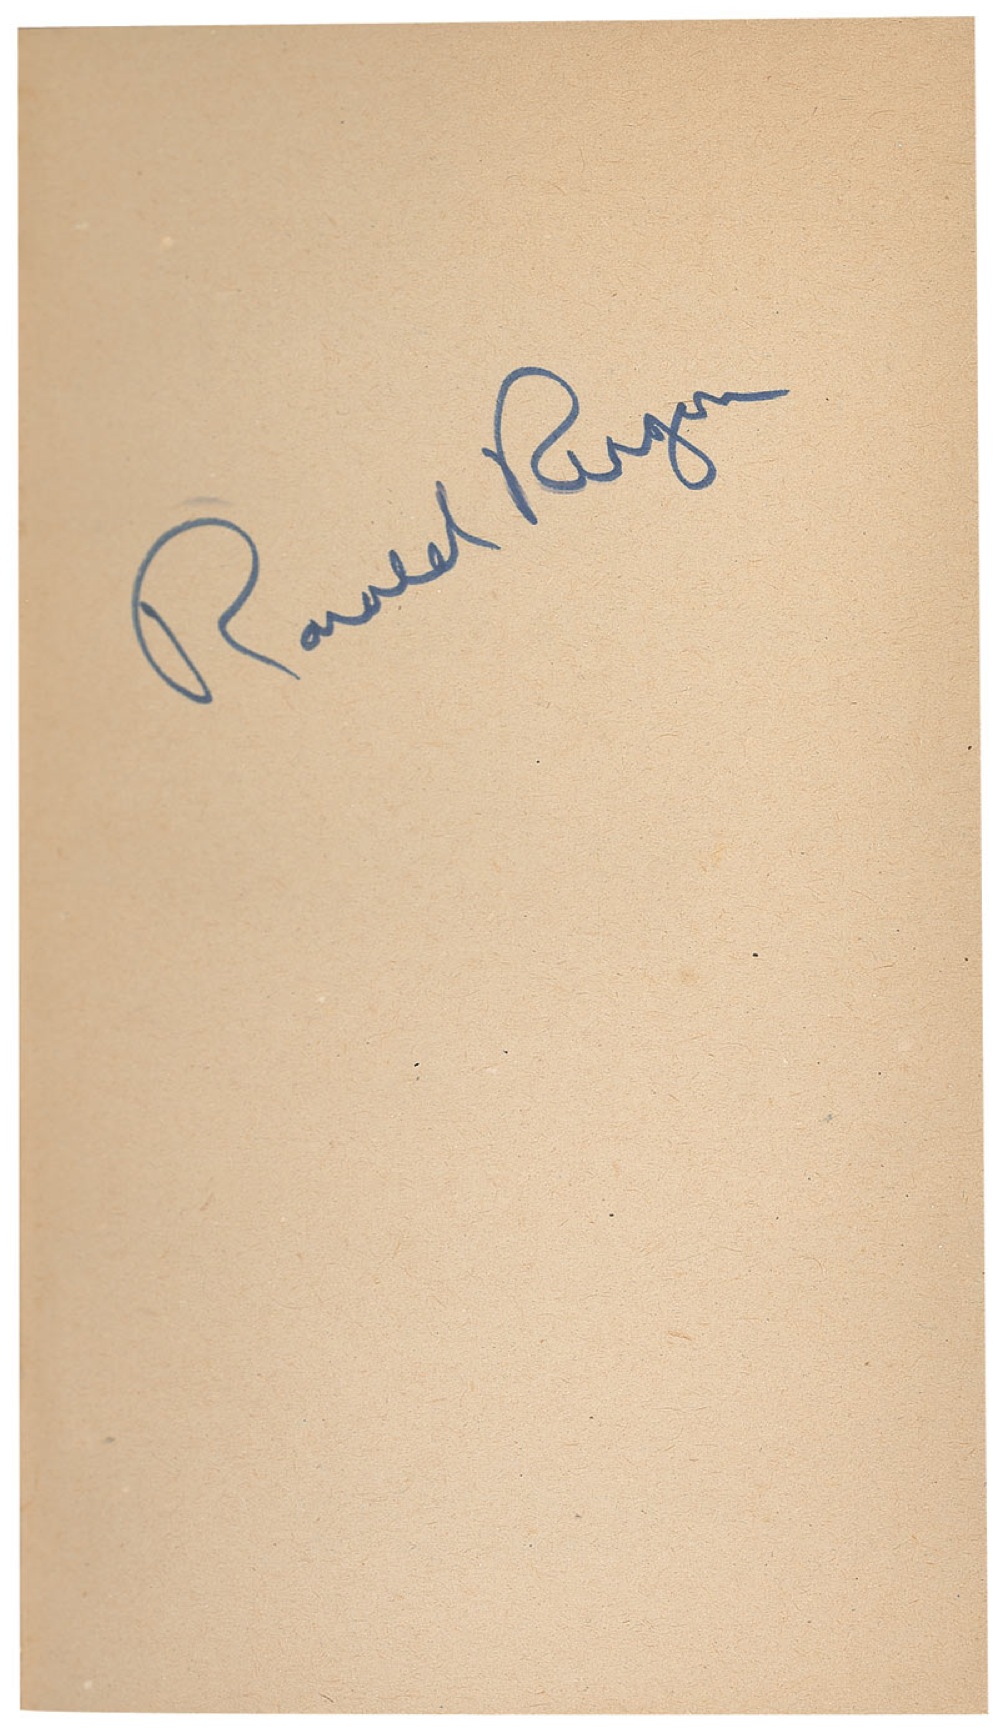 Lot #94 Ronald Reagan